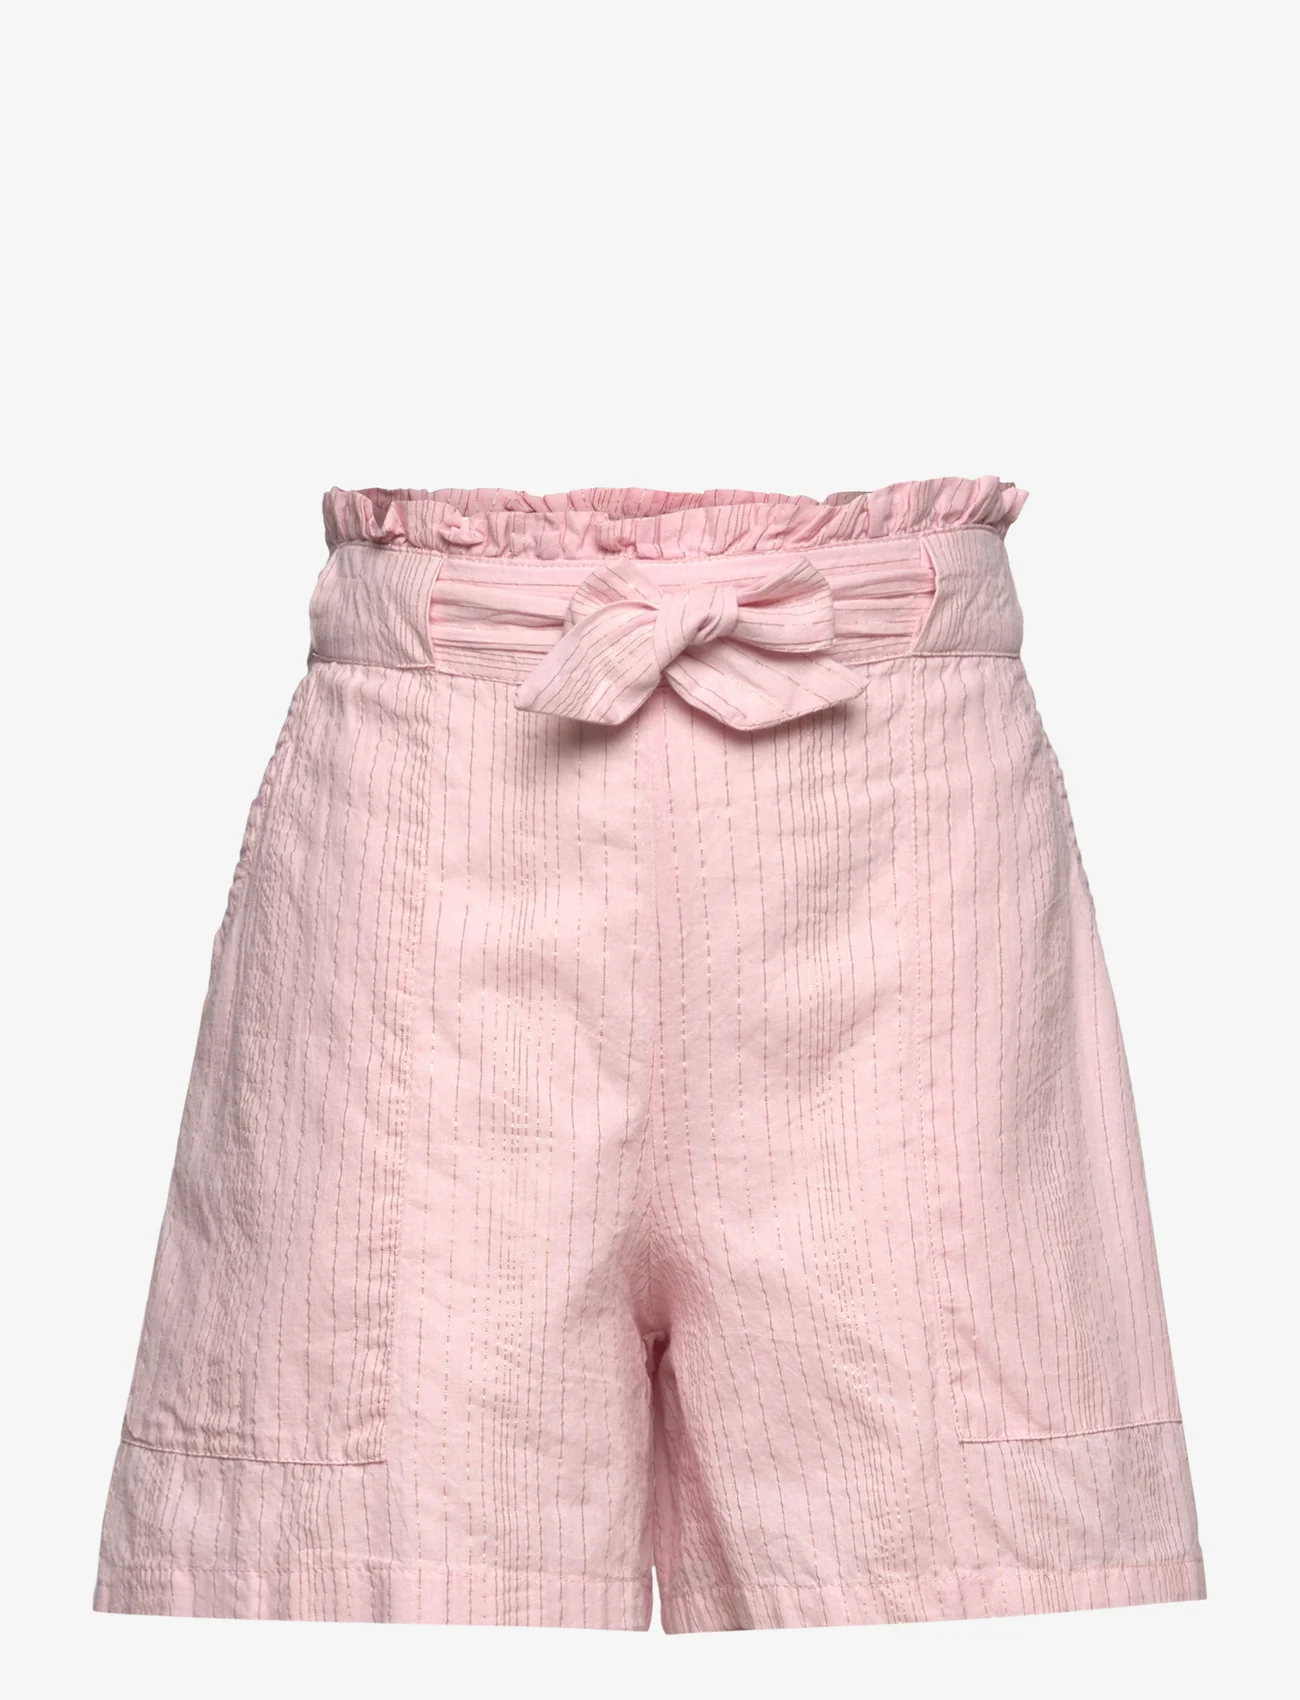 Creamie - Shorts Cotton Lurex - sweat shorts - bridal rose - 0